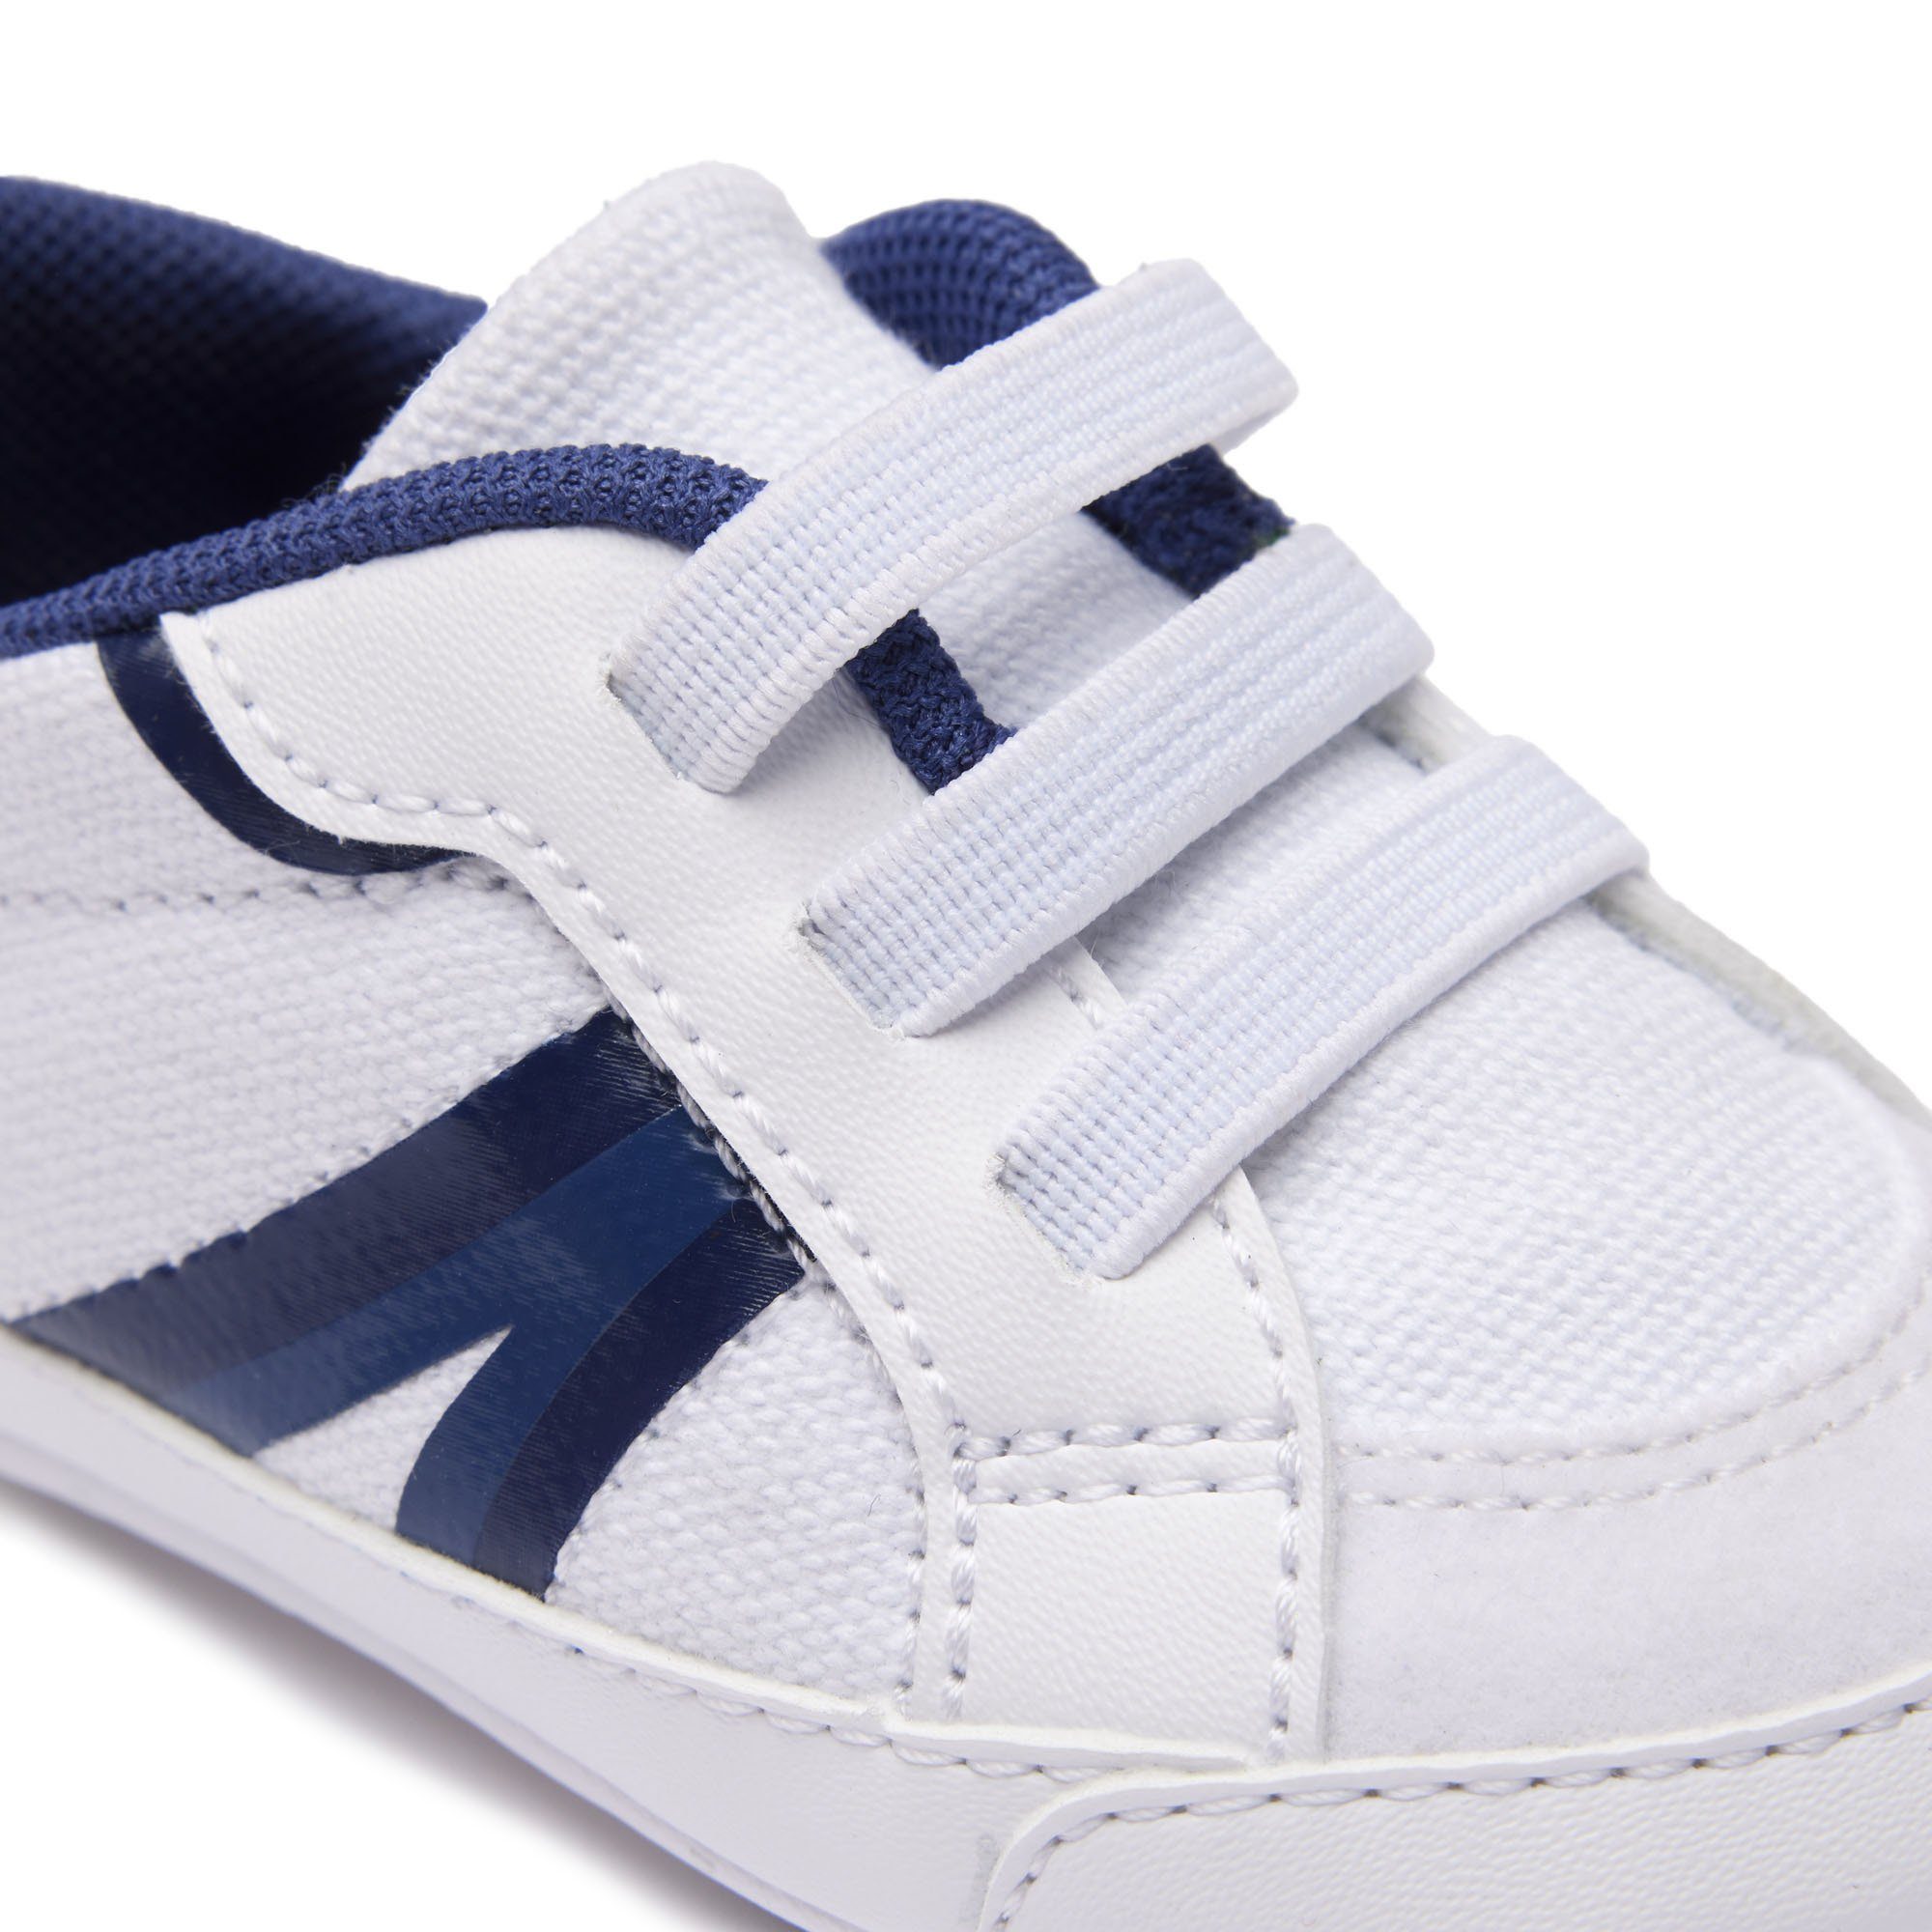 Schuhe Cub, Krabbelschuh Krabbelschuhe, - Sneaker, Baby Weiß/Blau Lacoste L004